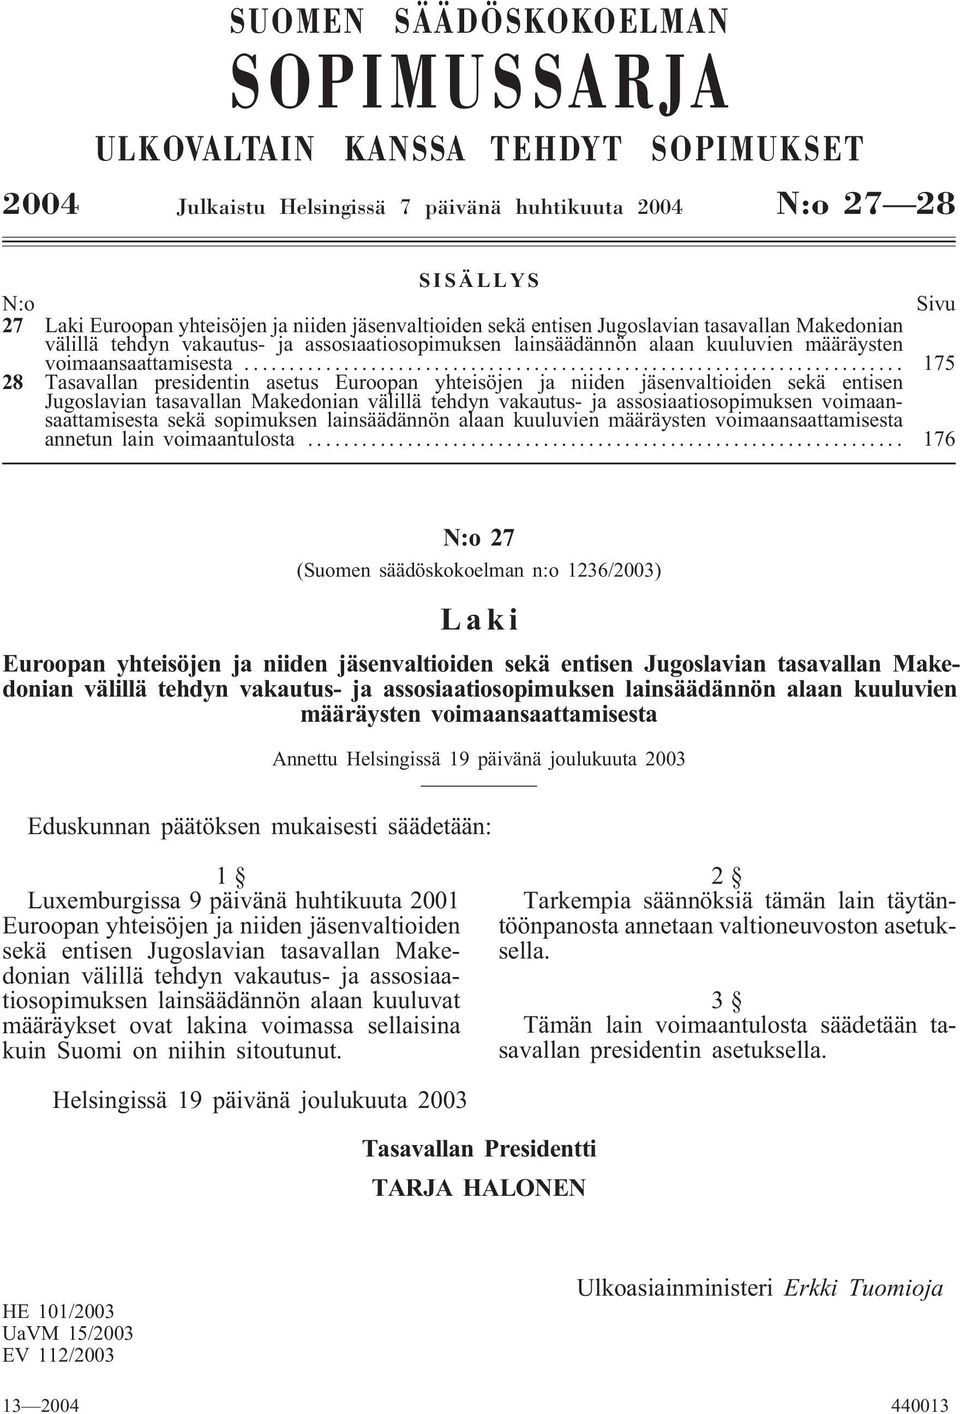 .. 175 28 Tasavallan presidentin asetus Euroopan yhteisöjen ja niiden jäsenvaltioiden sekä entisen Jugoslavian tasavallan Makedonian välillä tehdyn vakautus- ja assosiaatiosopimuksen